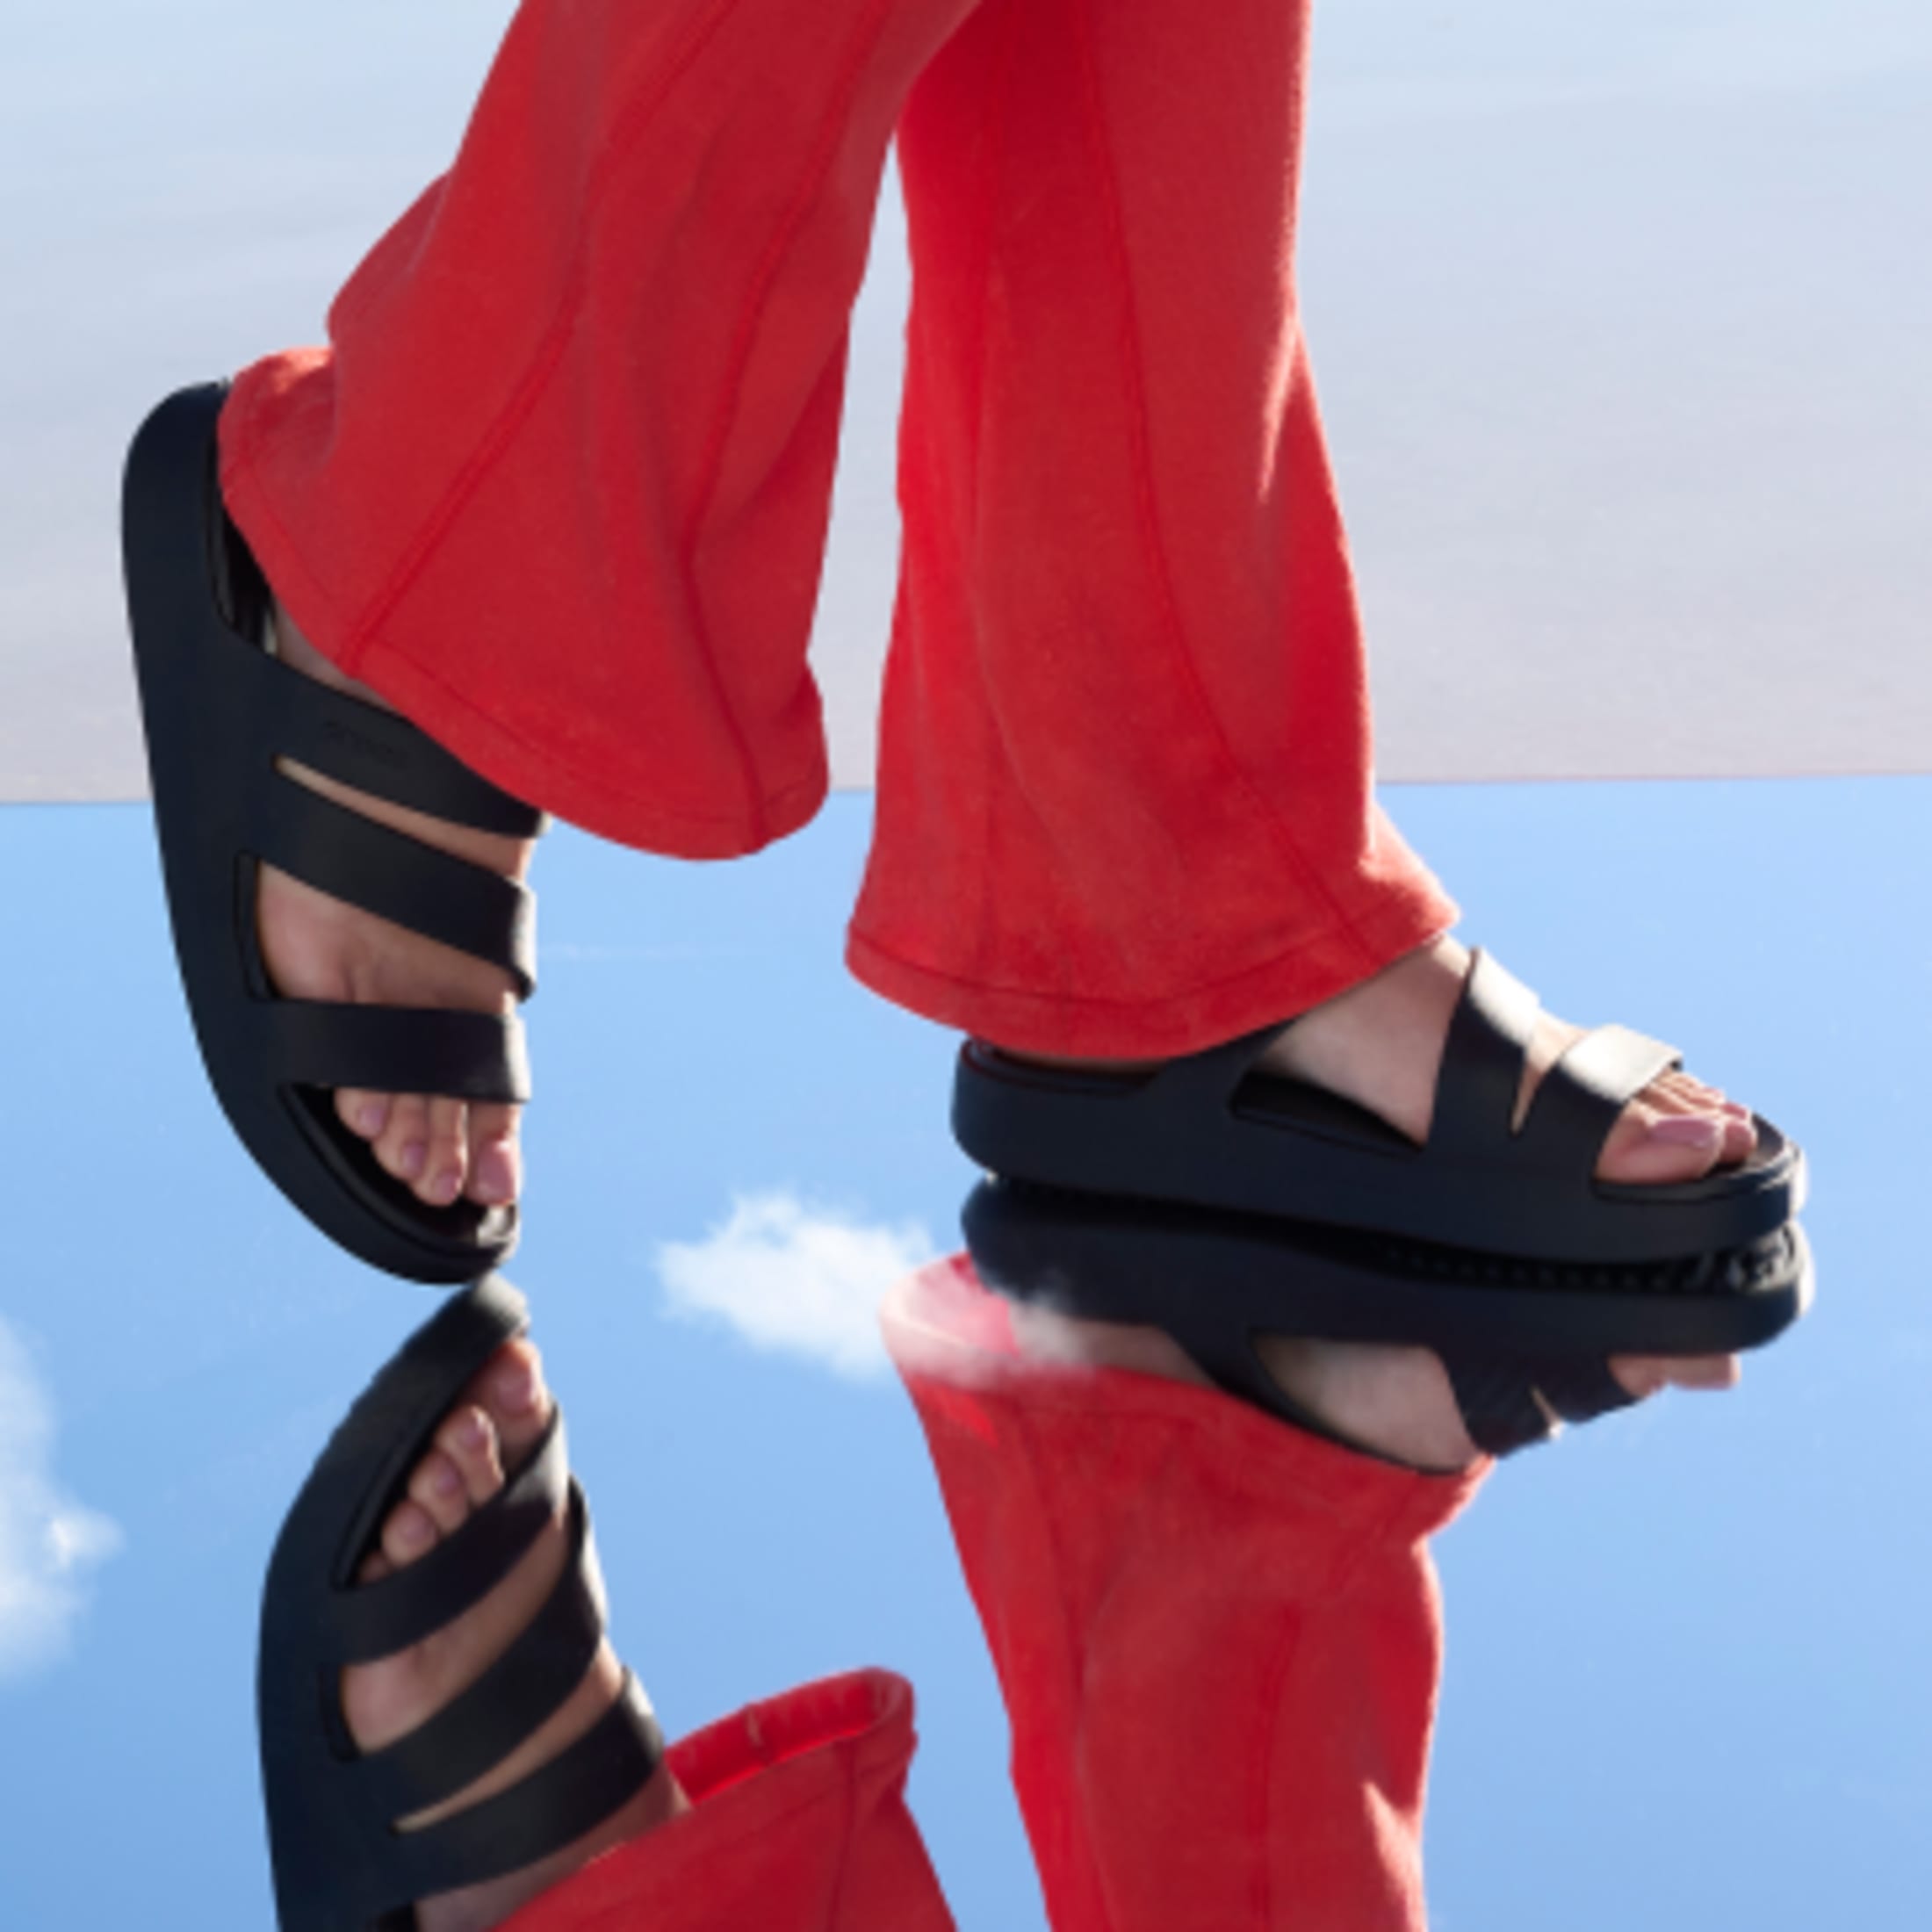 Buy Women's Crocs Flip Flop Footwear Online